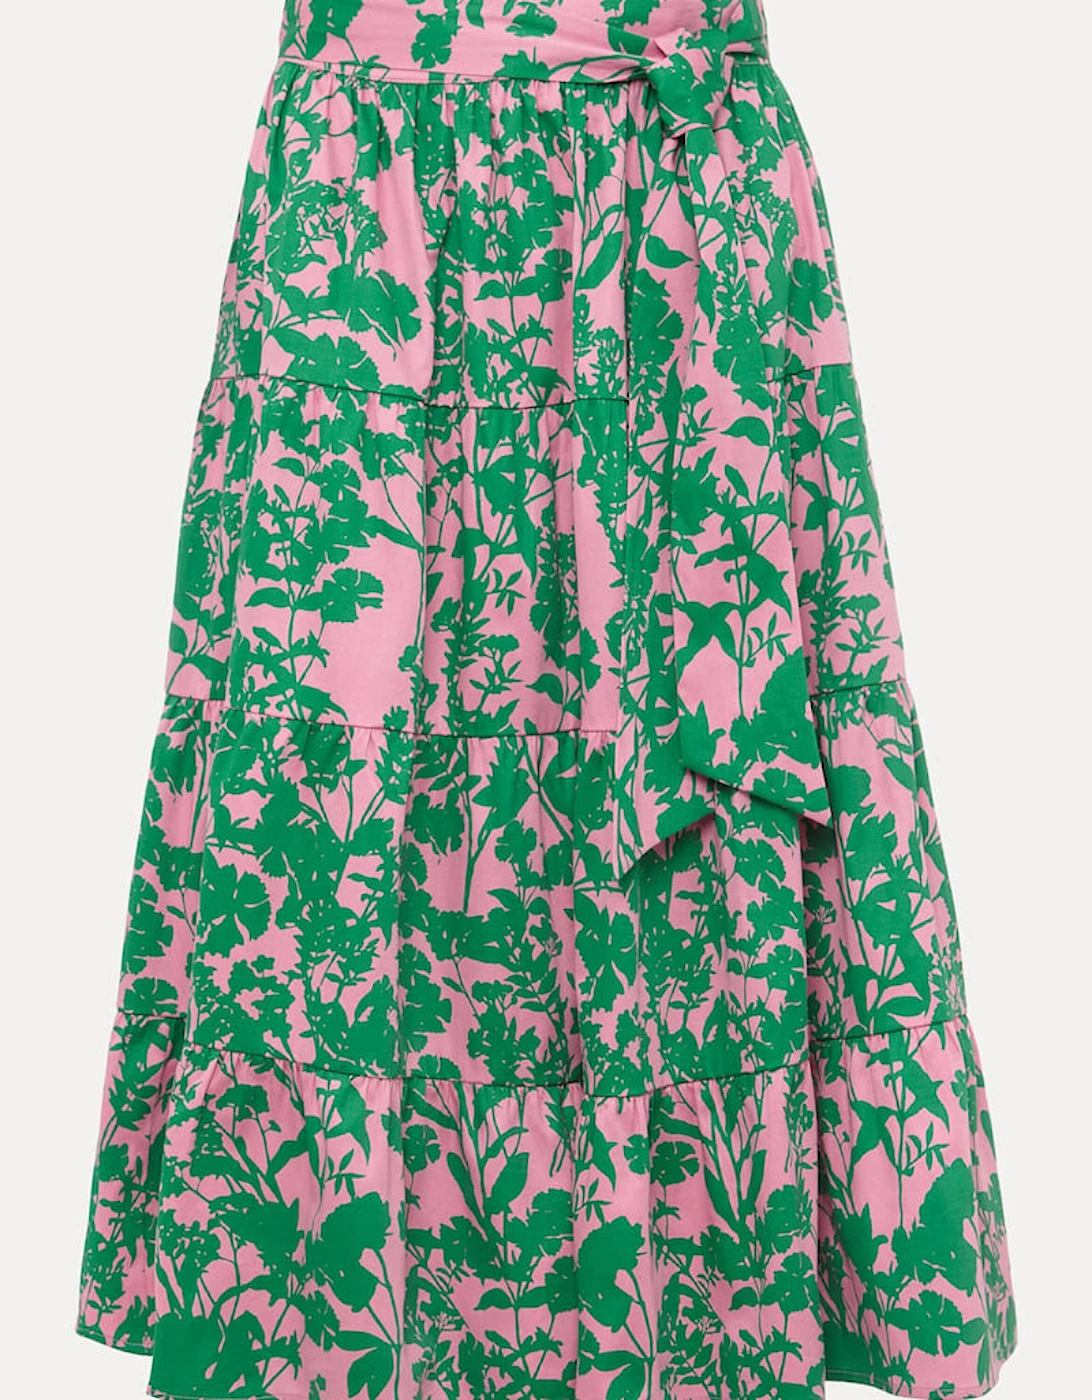 Cleona Printed Dobby Co-ord Skirt